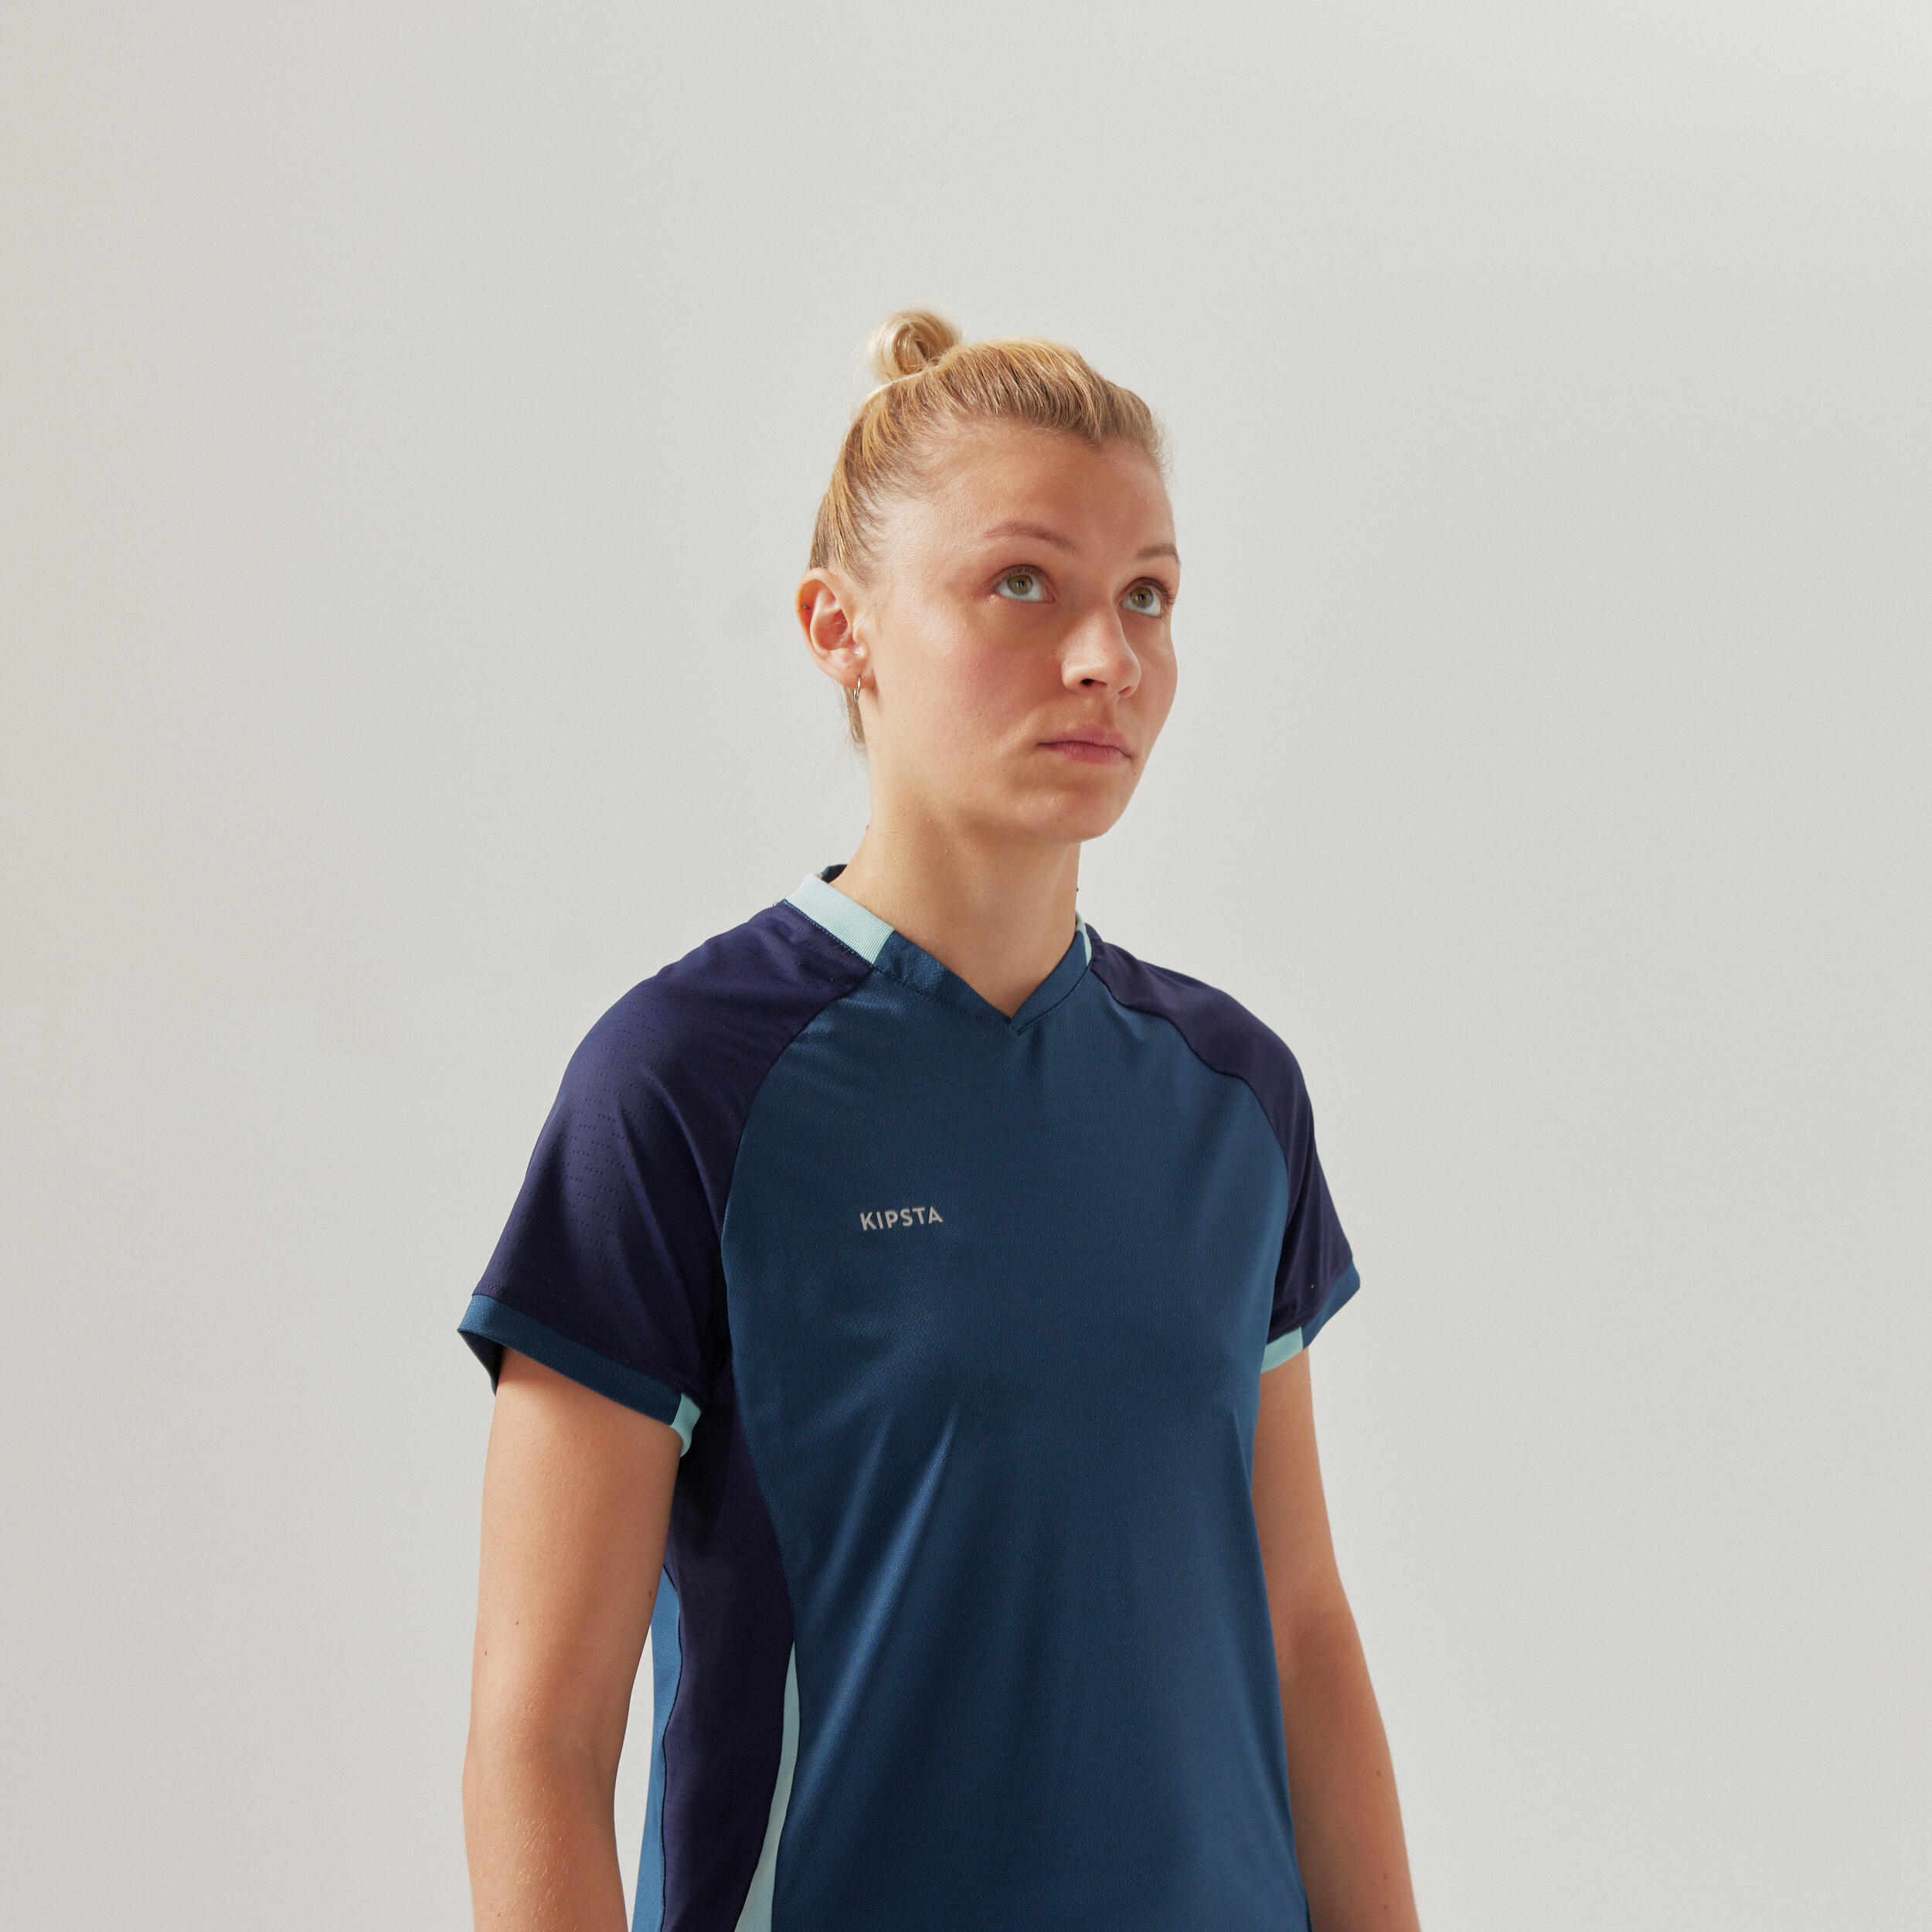 Women's Short-Sleeved Straight Cut Football Shirt - Blue 2/7